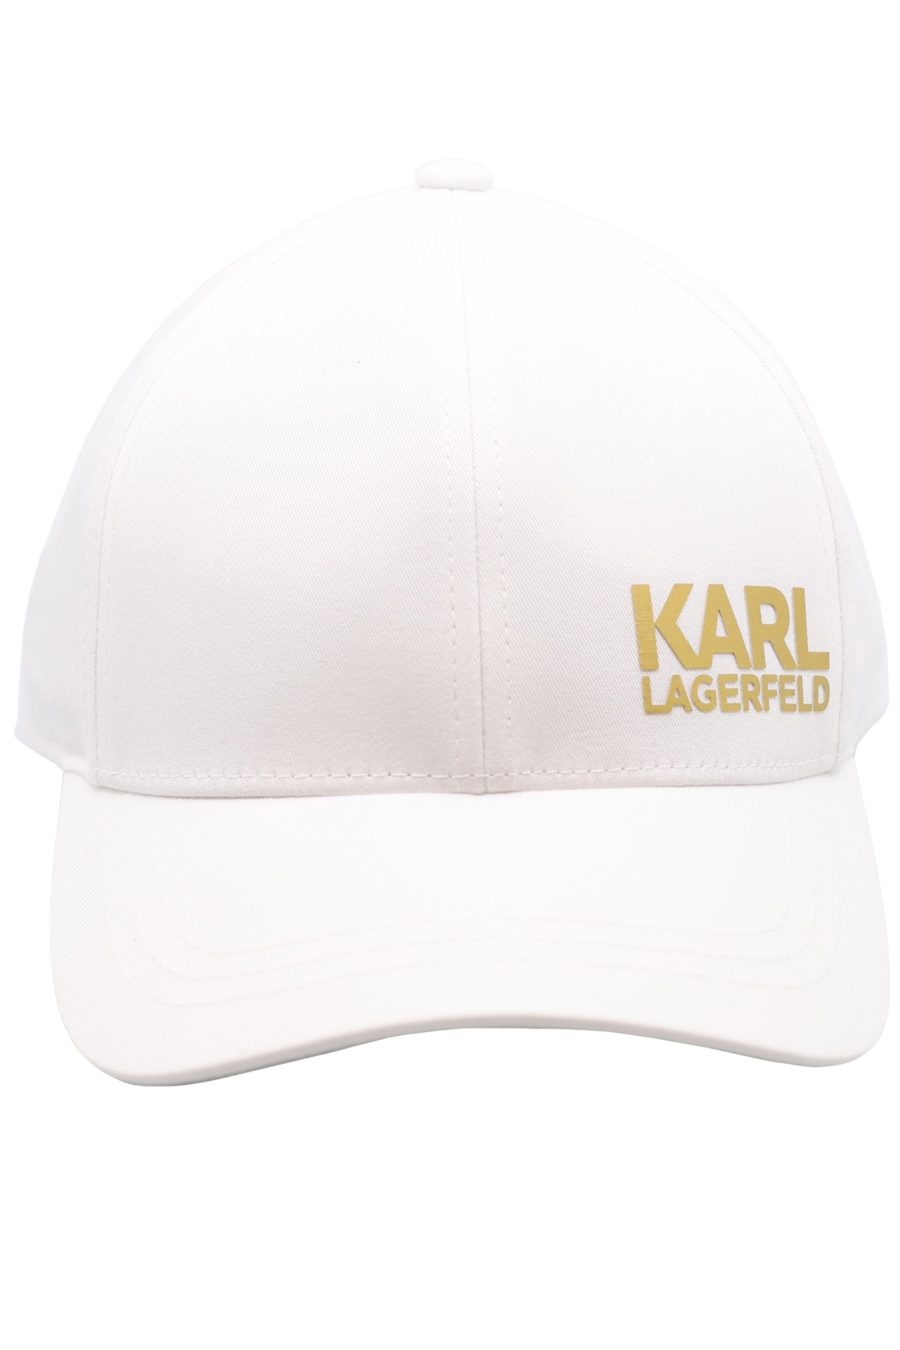 White cap with gold "Karl Legerfeld" logo - 49cf6fa7d1f87a3d39db31d609bdb6cf443a88e4